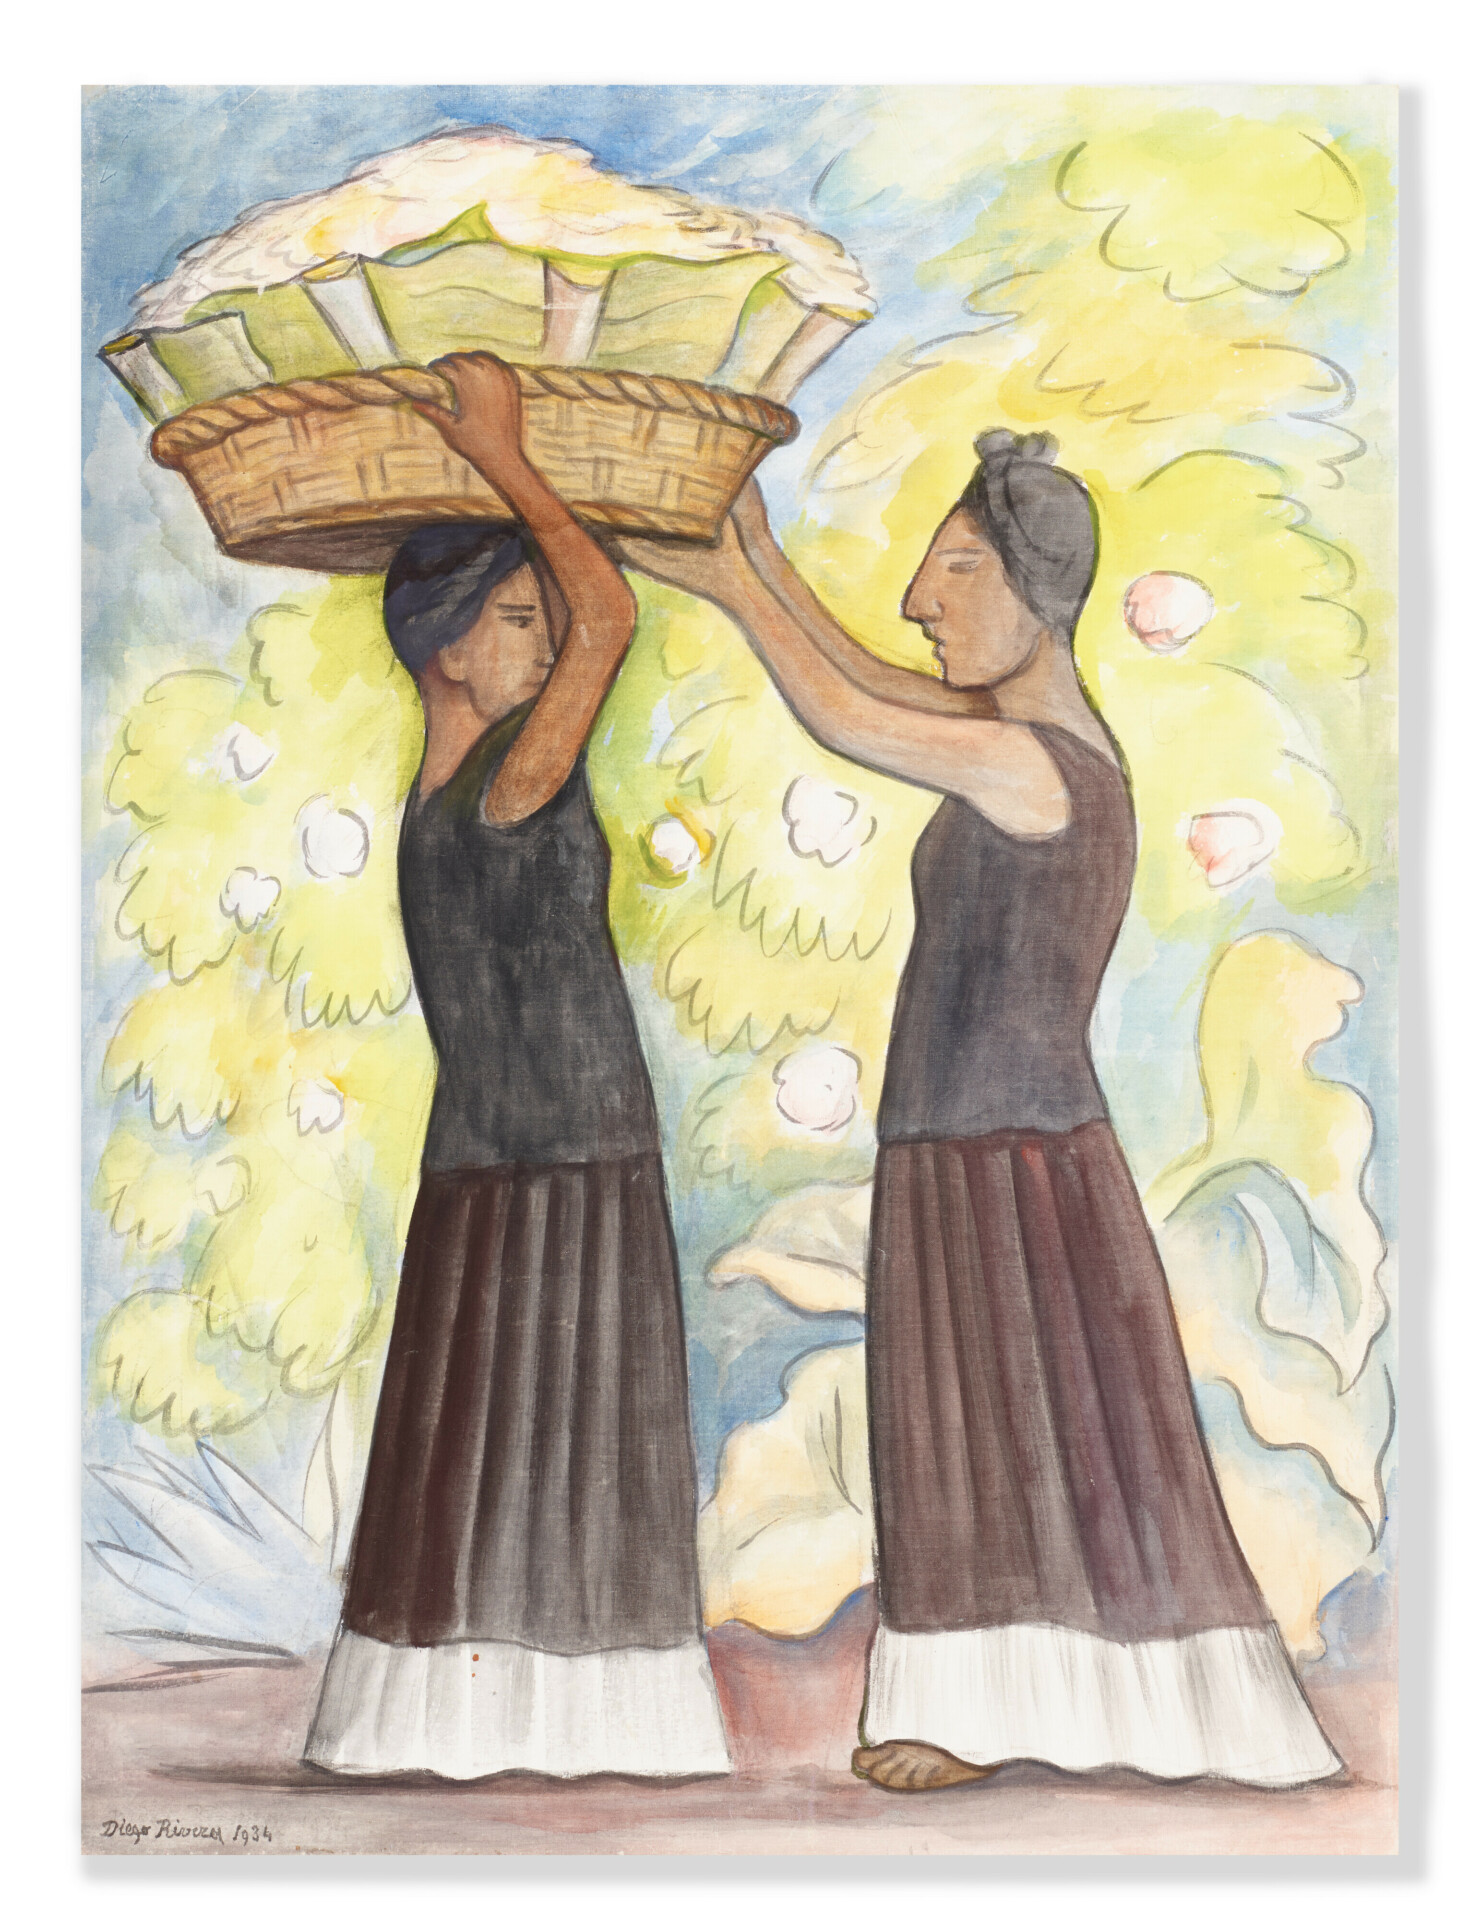 Diego Rivera (1886-1957), Tehuanas cargando una canasta (Tehuanas carrying a basket)